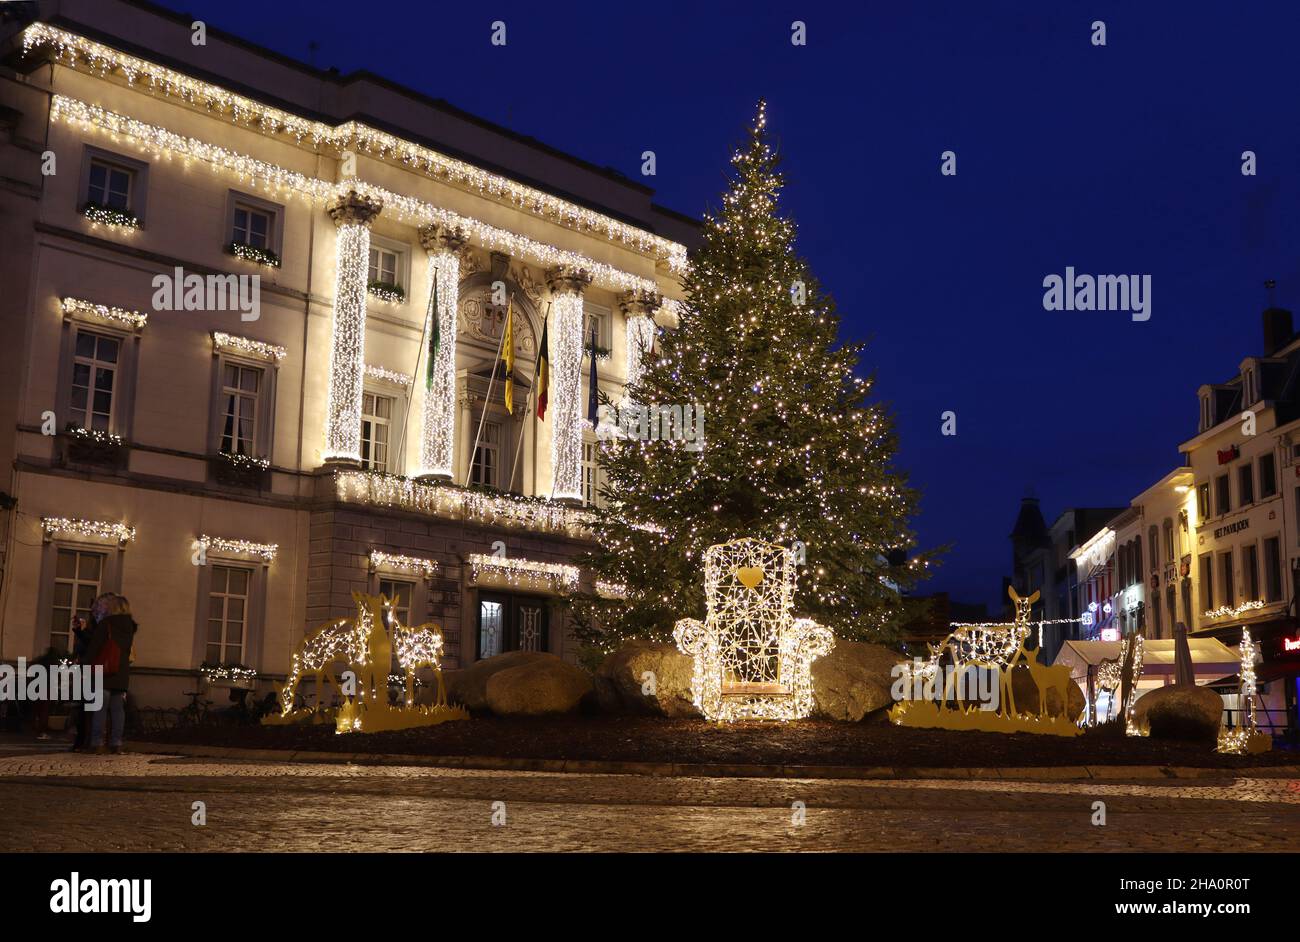 AALST, BELGIEN, 5. DEZEMBER 2021: Blick auf den Hauptplatz während der Weihnachtszeit, mit einem Weihnachtsbaum und dem beleuchteten alten Rathaus in Aalst. Stockfoto